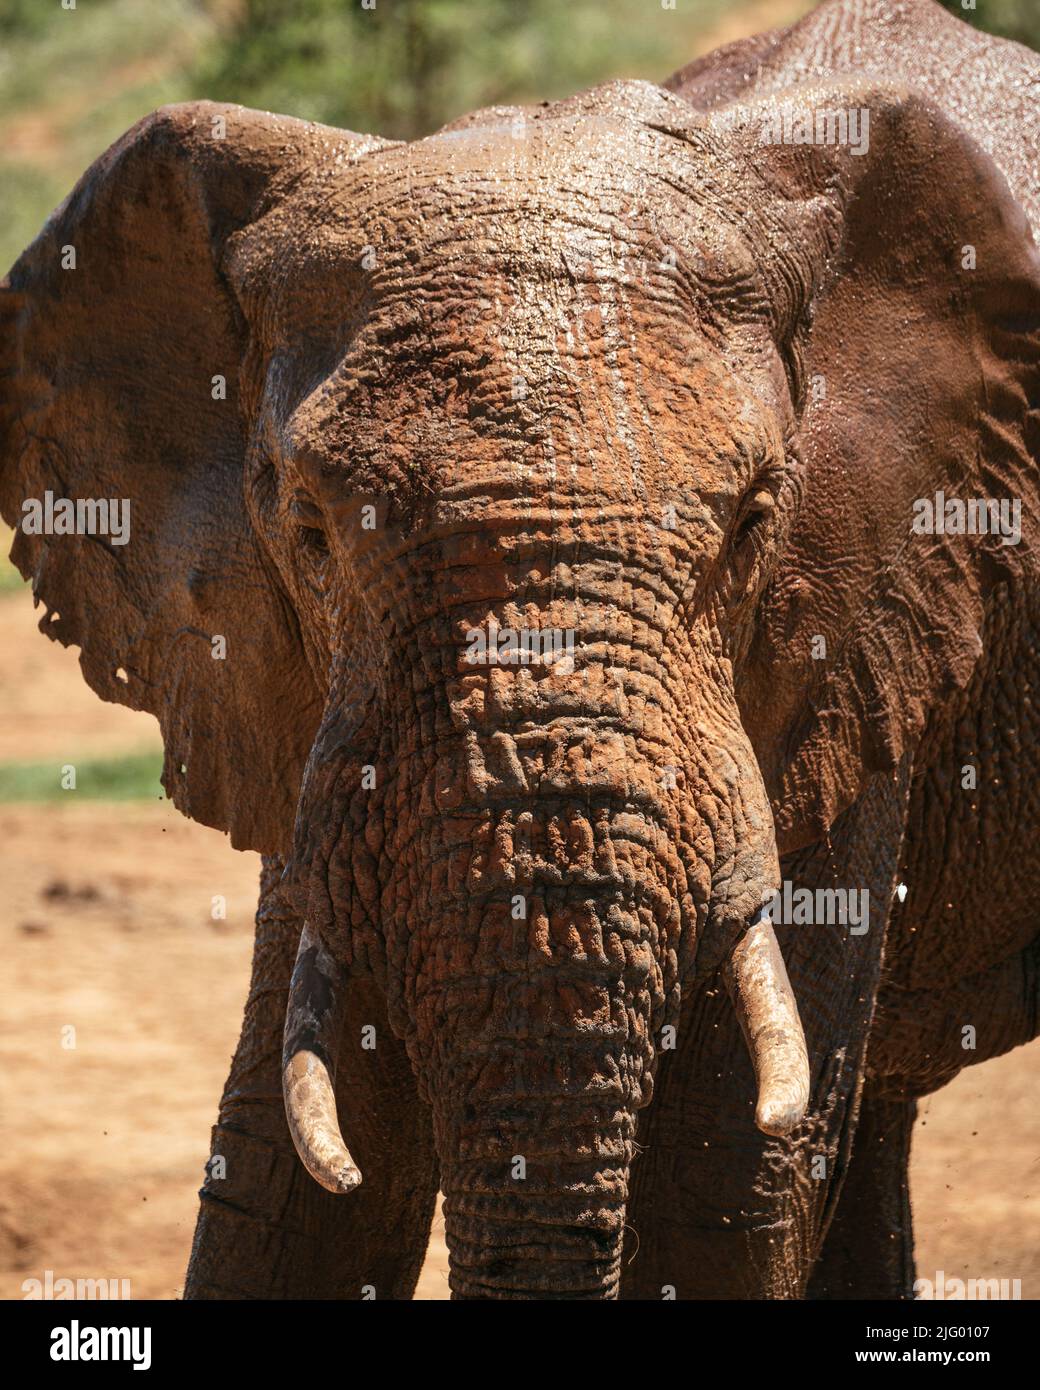 L'éléphant d'Afrique au point d'eau, parc national de l'éléphant d'Addo, Cap oriental, Afrique du Sud, Afrique Banque D'Images